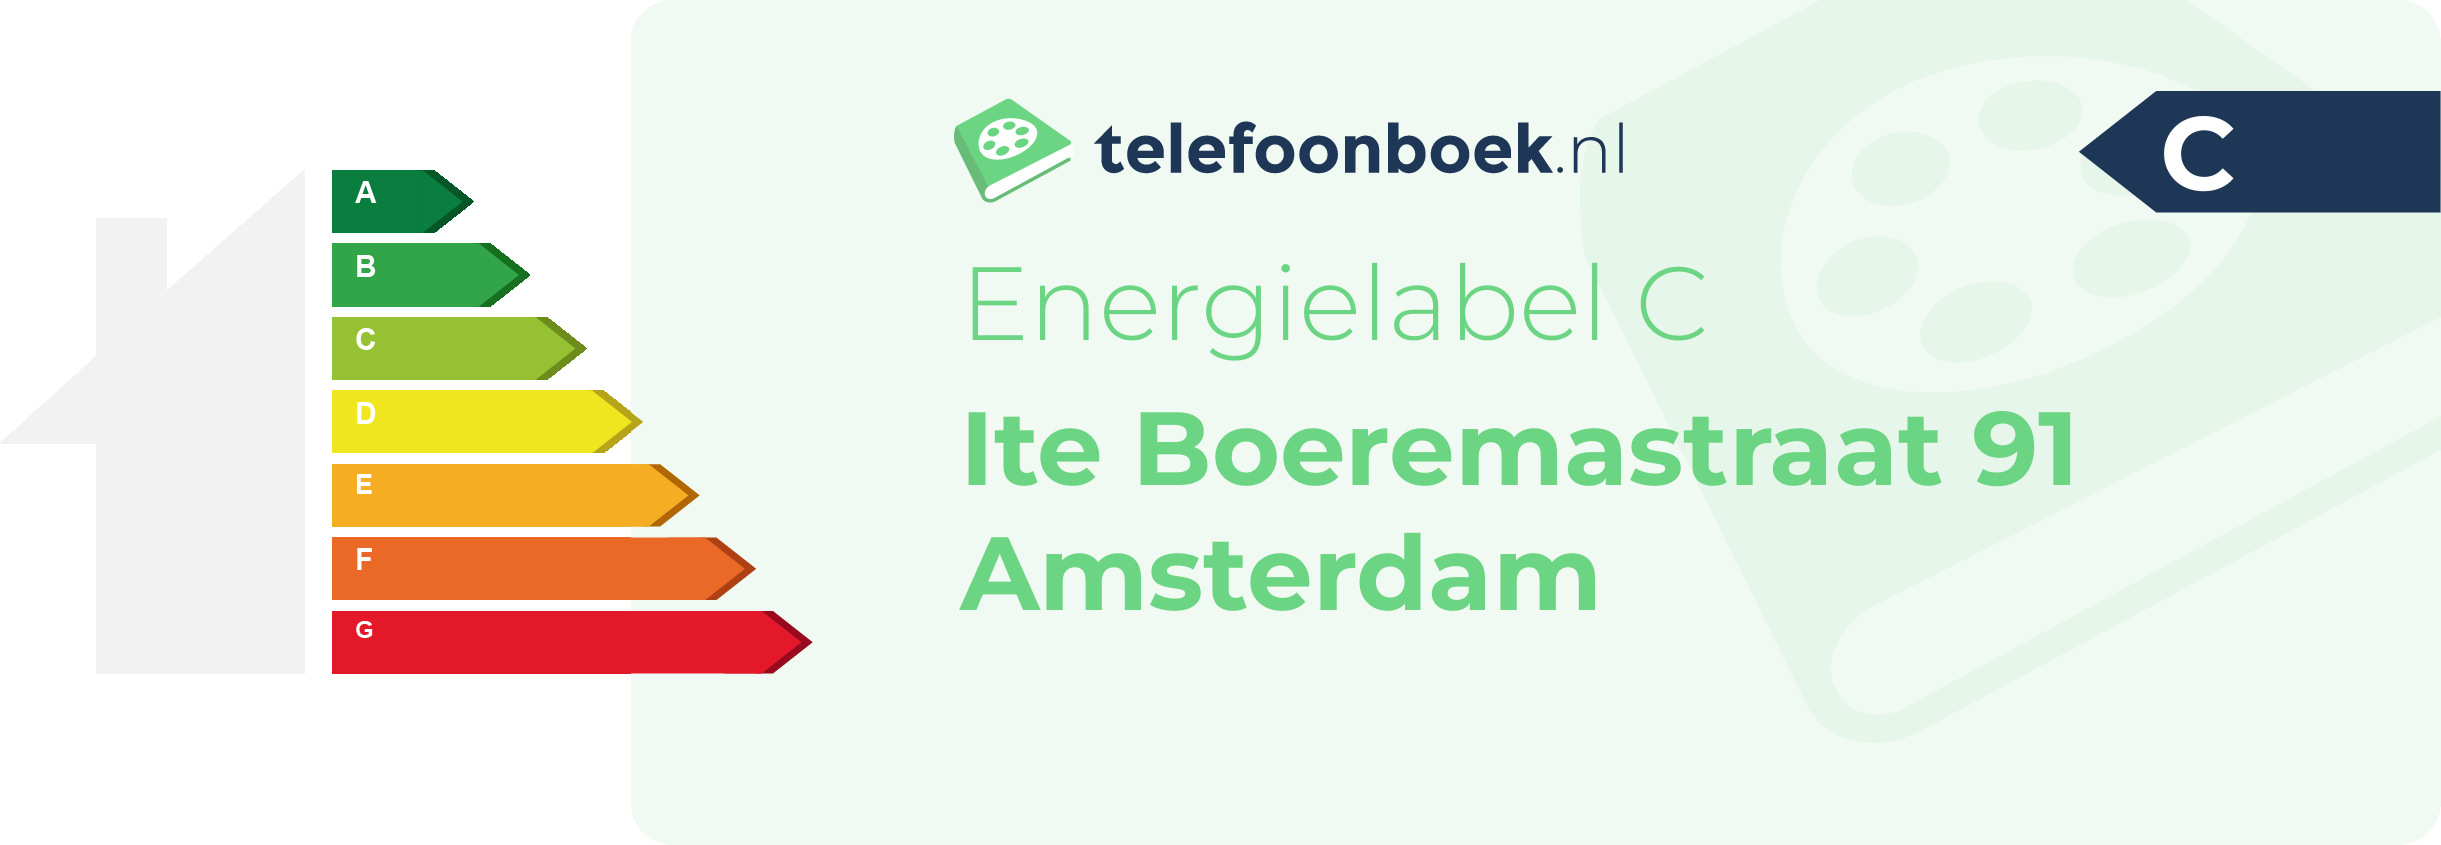 Energielabel Ite Boeremastraat 91 Amsterdam